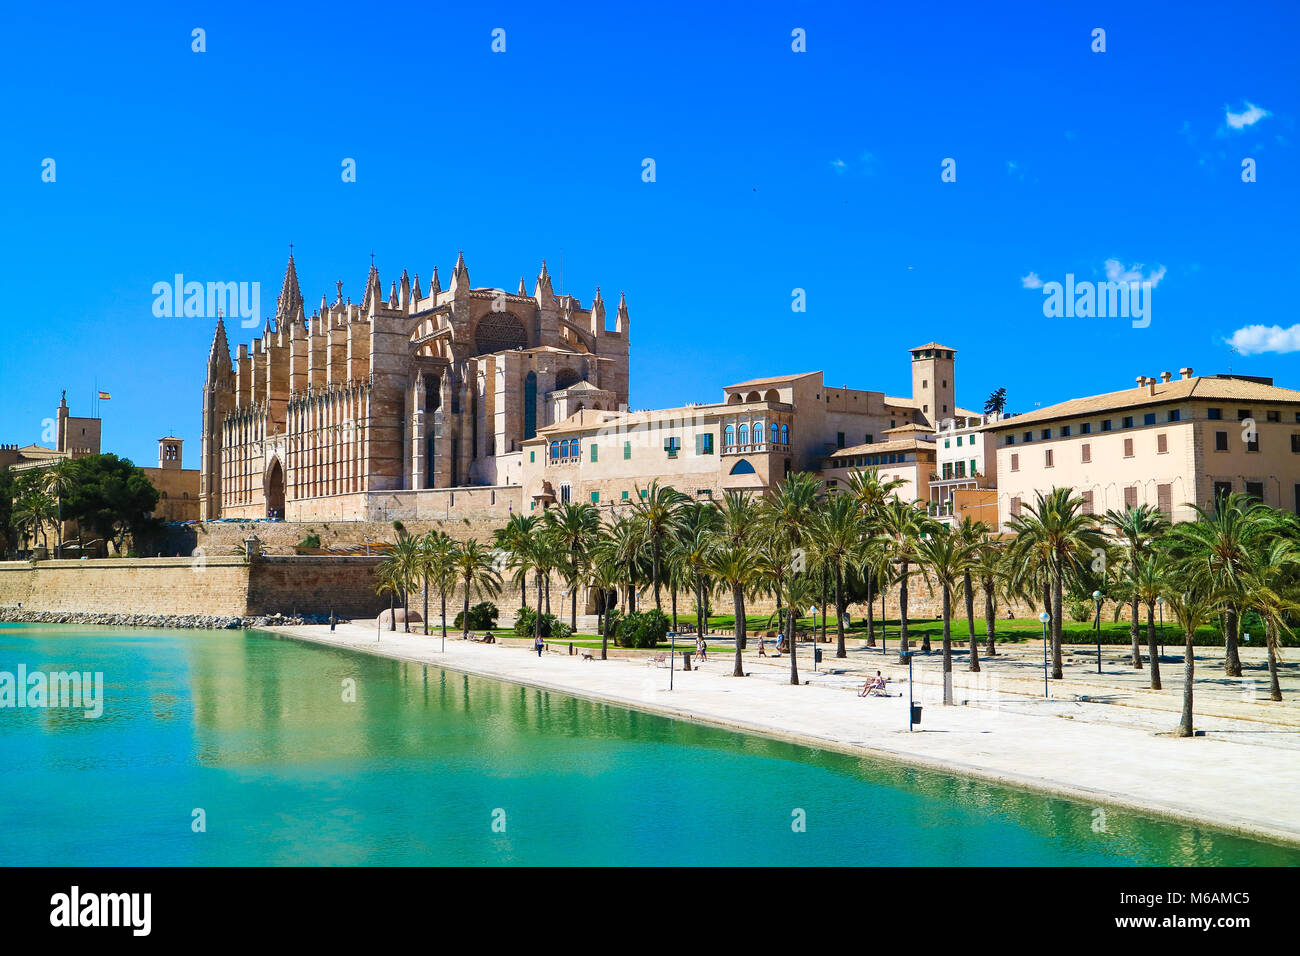 La Seu - Die berühmten mittelalterlichen gotischen Kathedrale in der Hauptstadt der Insel. Palma de Mallorca, Spanien. Stockfoto